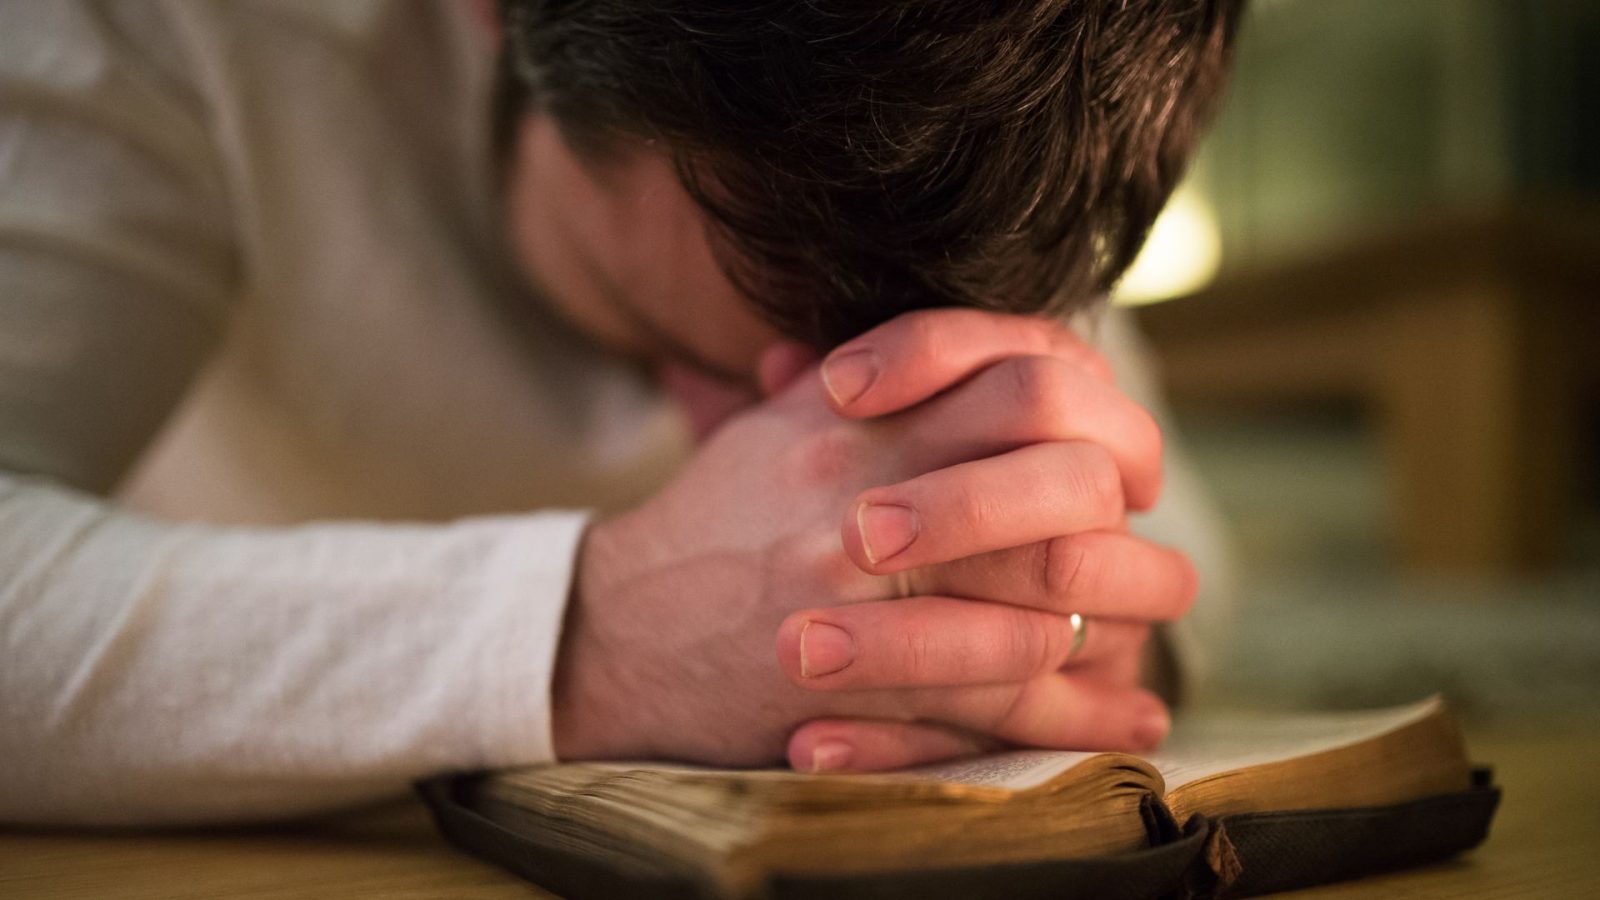 Koristite ovu molitvu ako ste udovac i osjećate se usamljeno